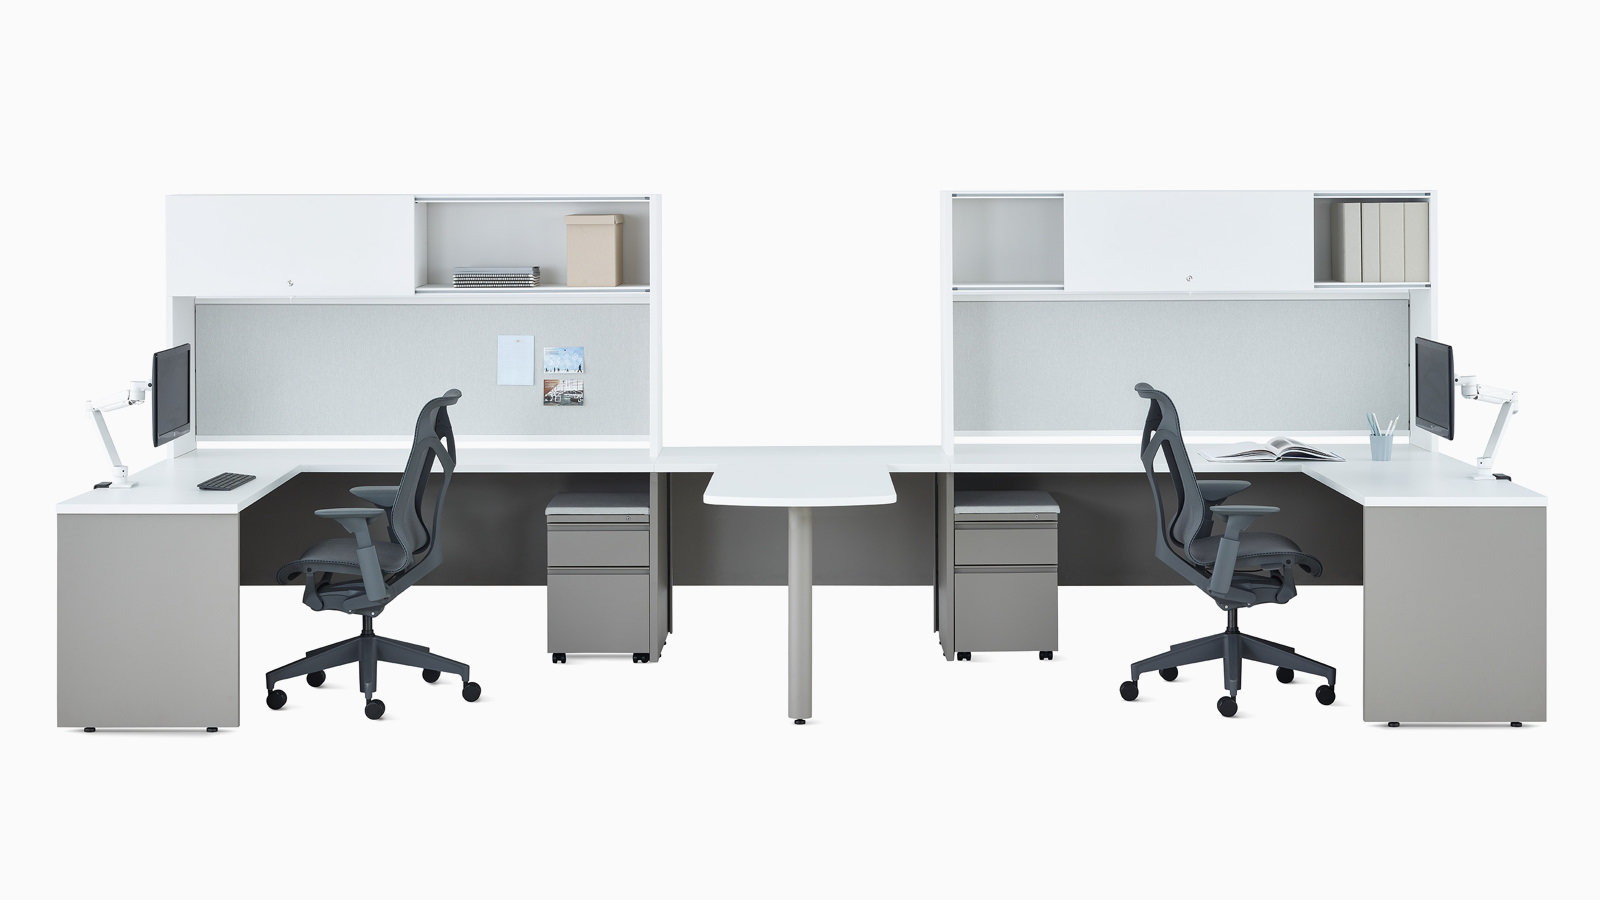 Duas mesas metálicas em branco e cinza com armário superior, braços para monitor Concerto e cadeiras Cosm cinza escuro.